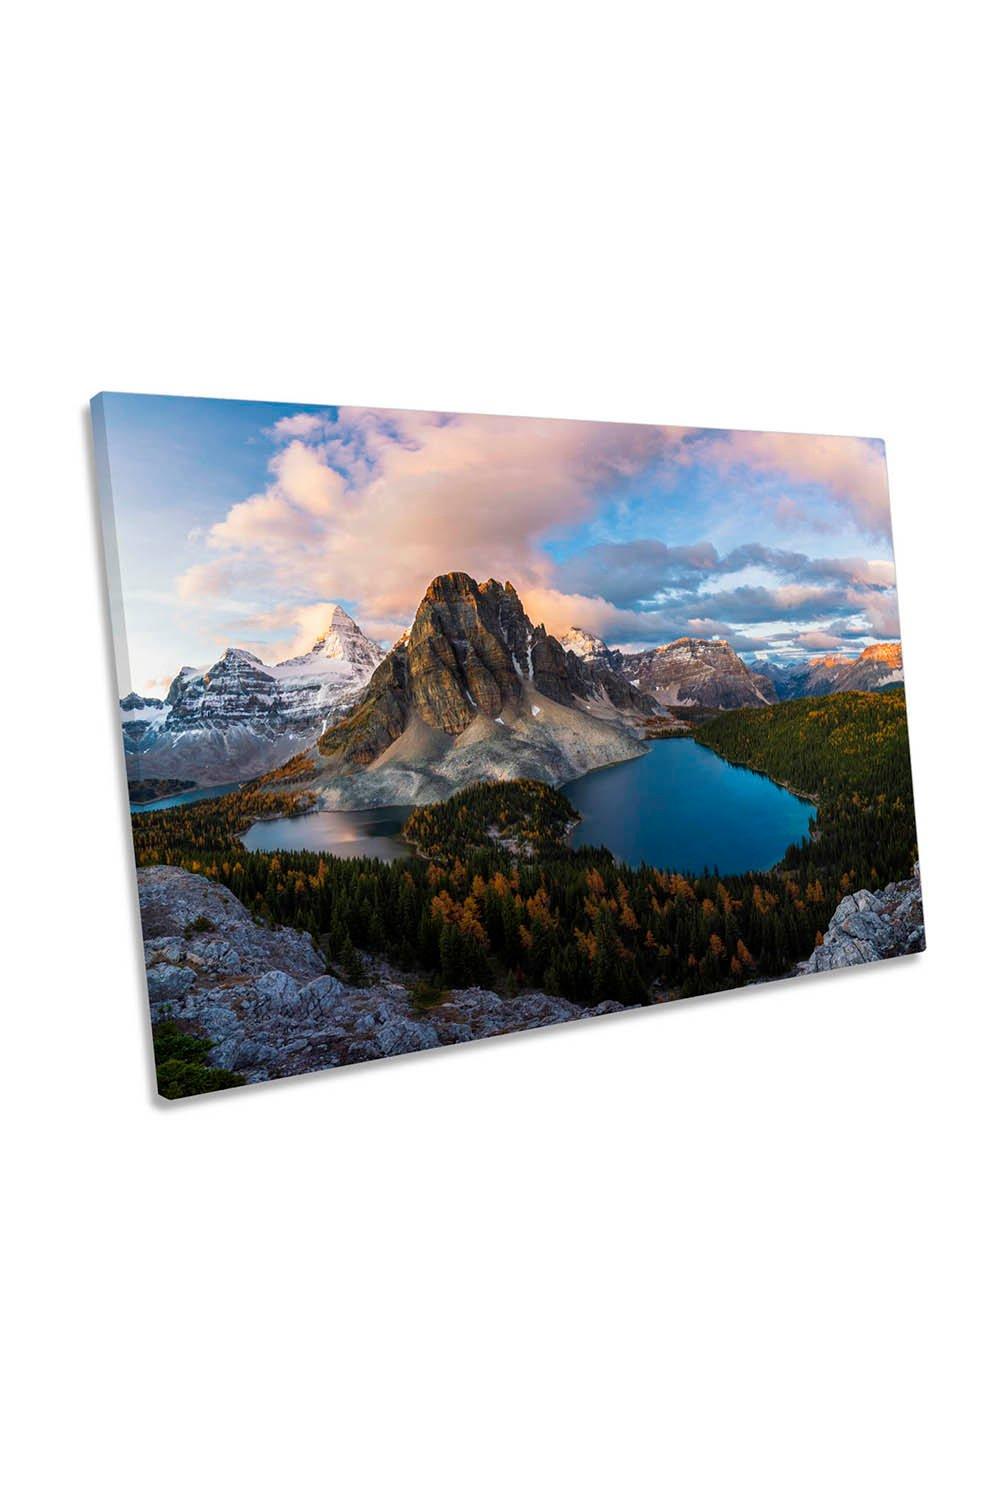 Mount Assiniboine Canada Sunrise Landscape Canvas Wall Art Picture Print